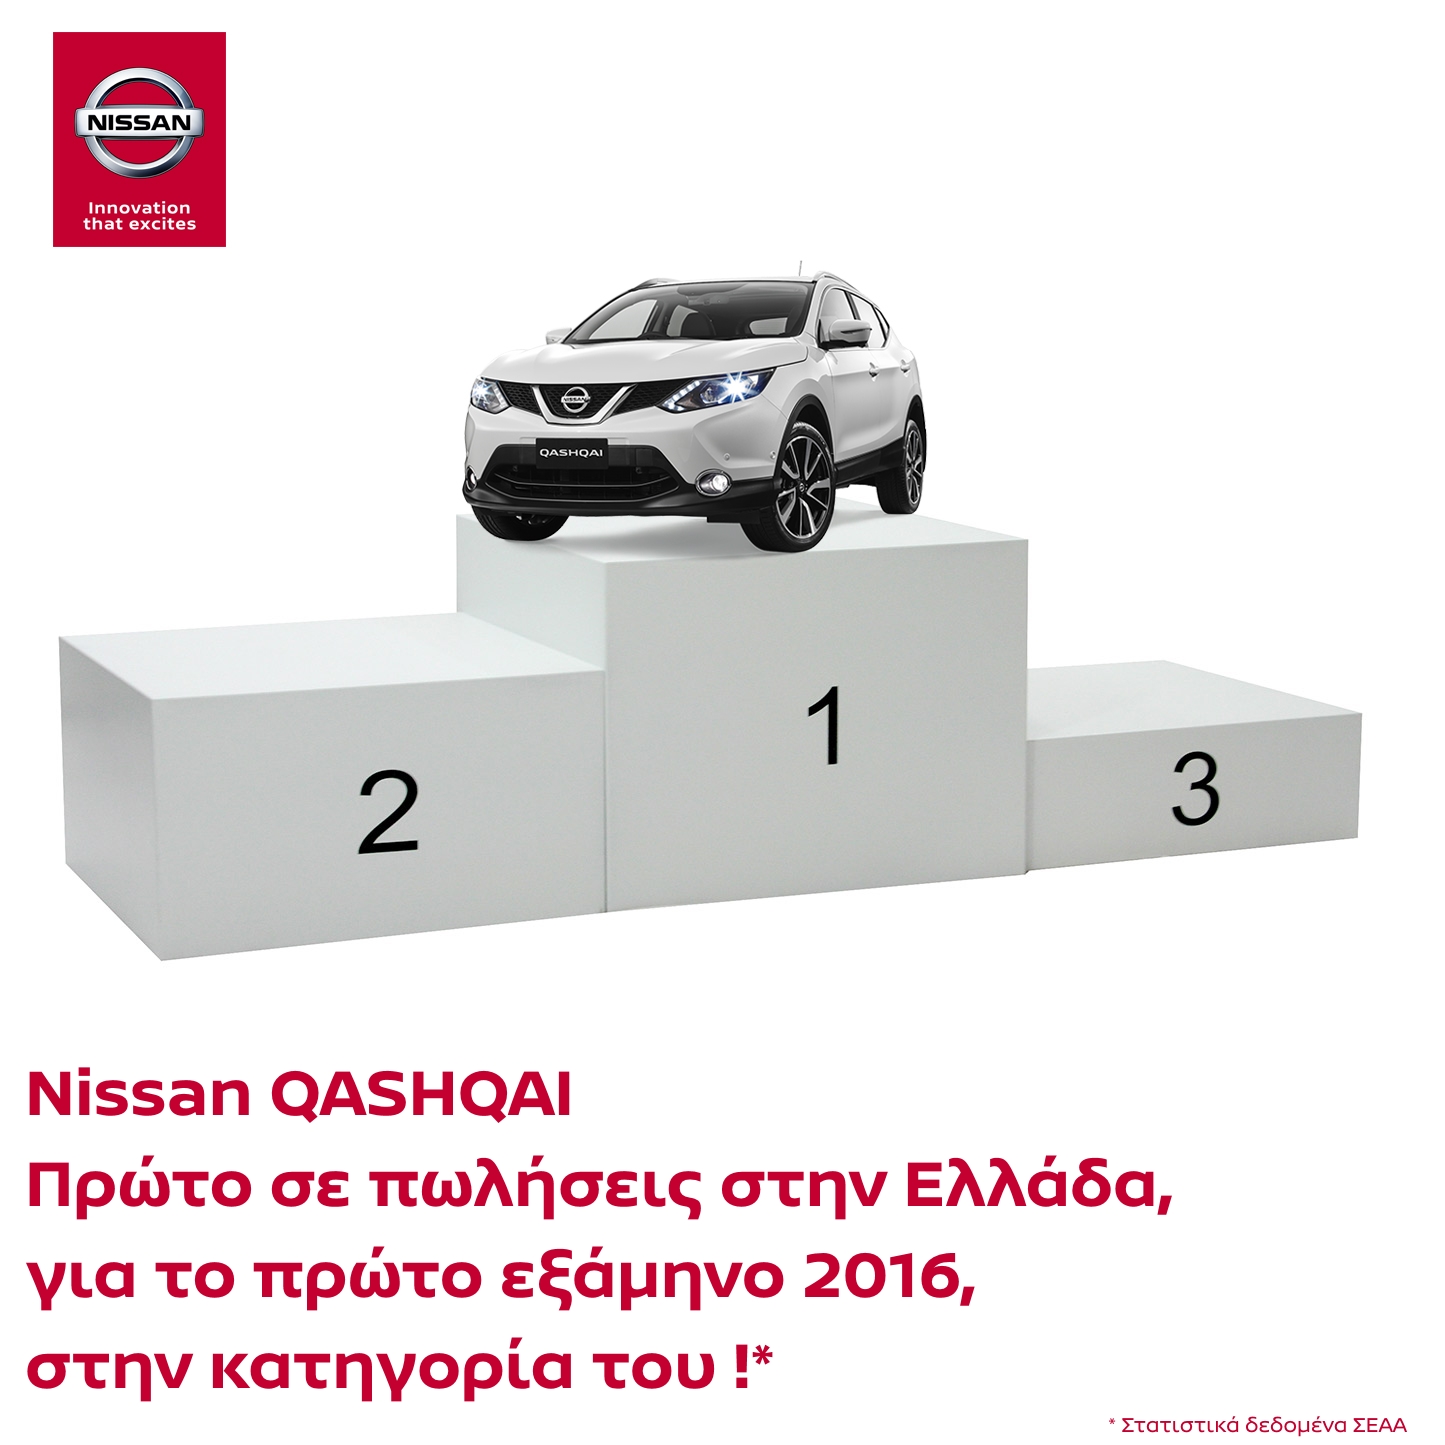 Qashqai2Bchamp Le Nissan QASHQAI premier des ventes, au niveau national, dans sa catégorie !